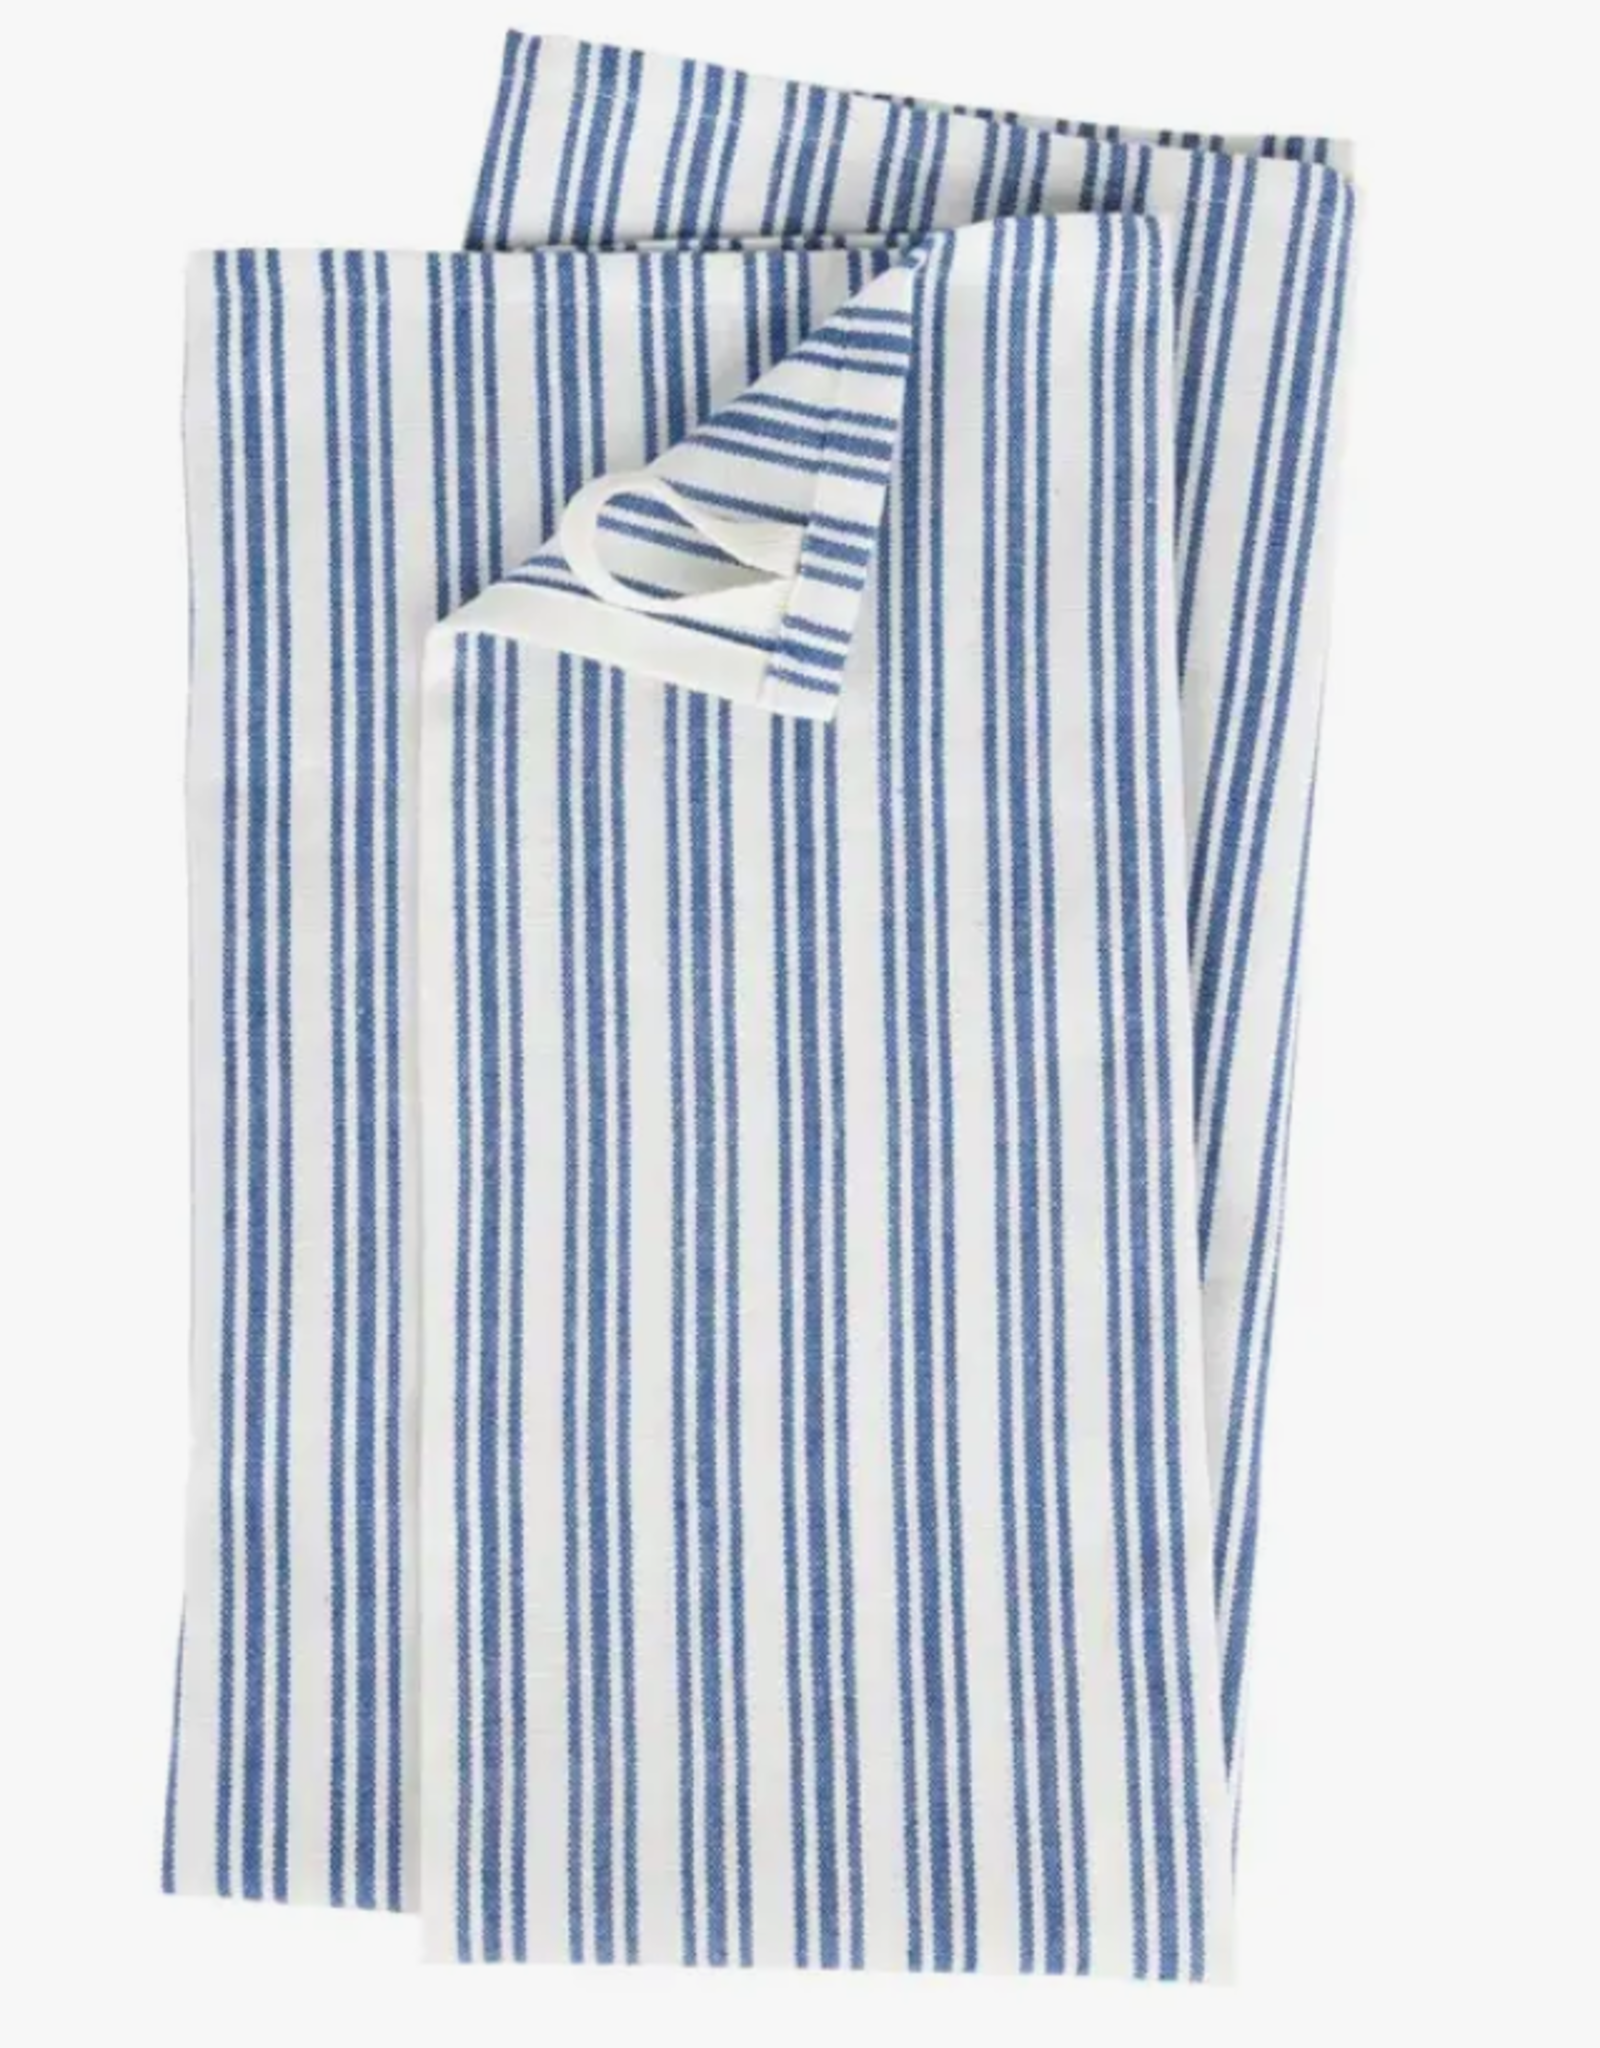 Ten Thousand Villages Small Stripe Blue White Tea Towel